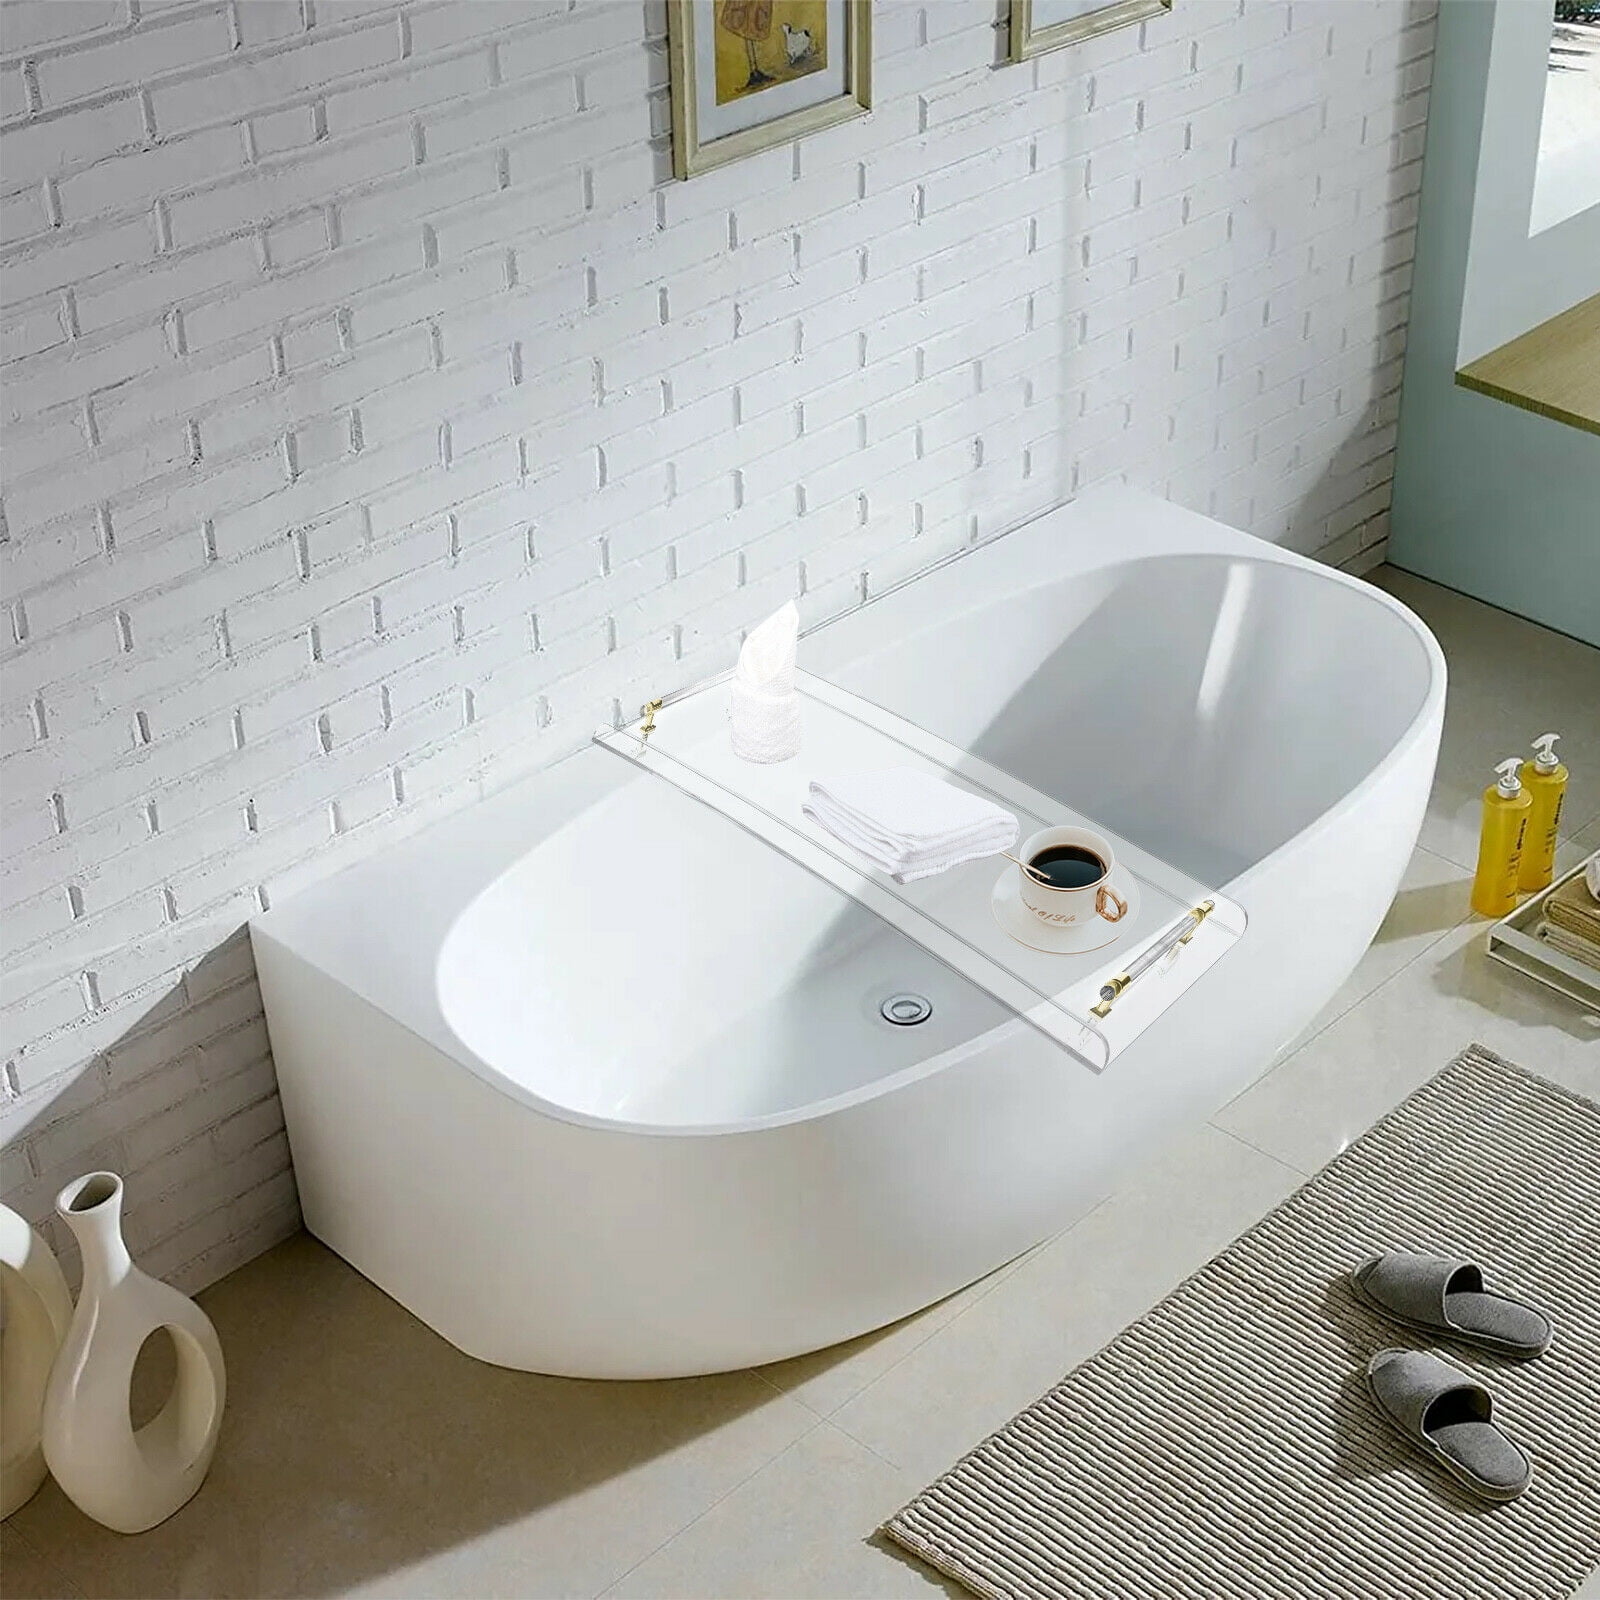 Acrylic Water Ripple Bathtub Tray Clear Bathroom Caddy Shelf with Gold  Handles